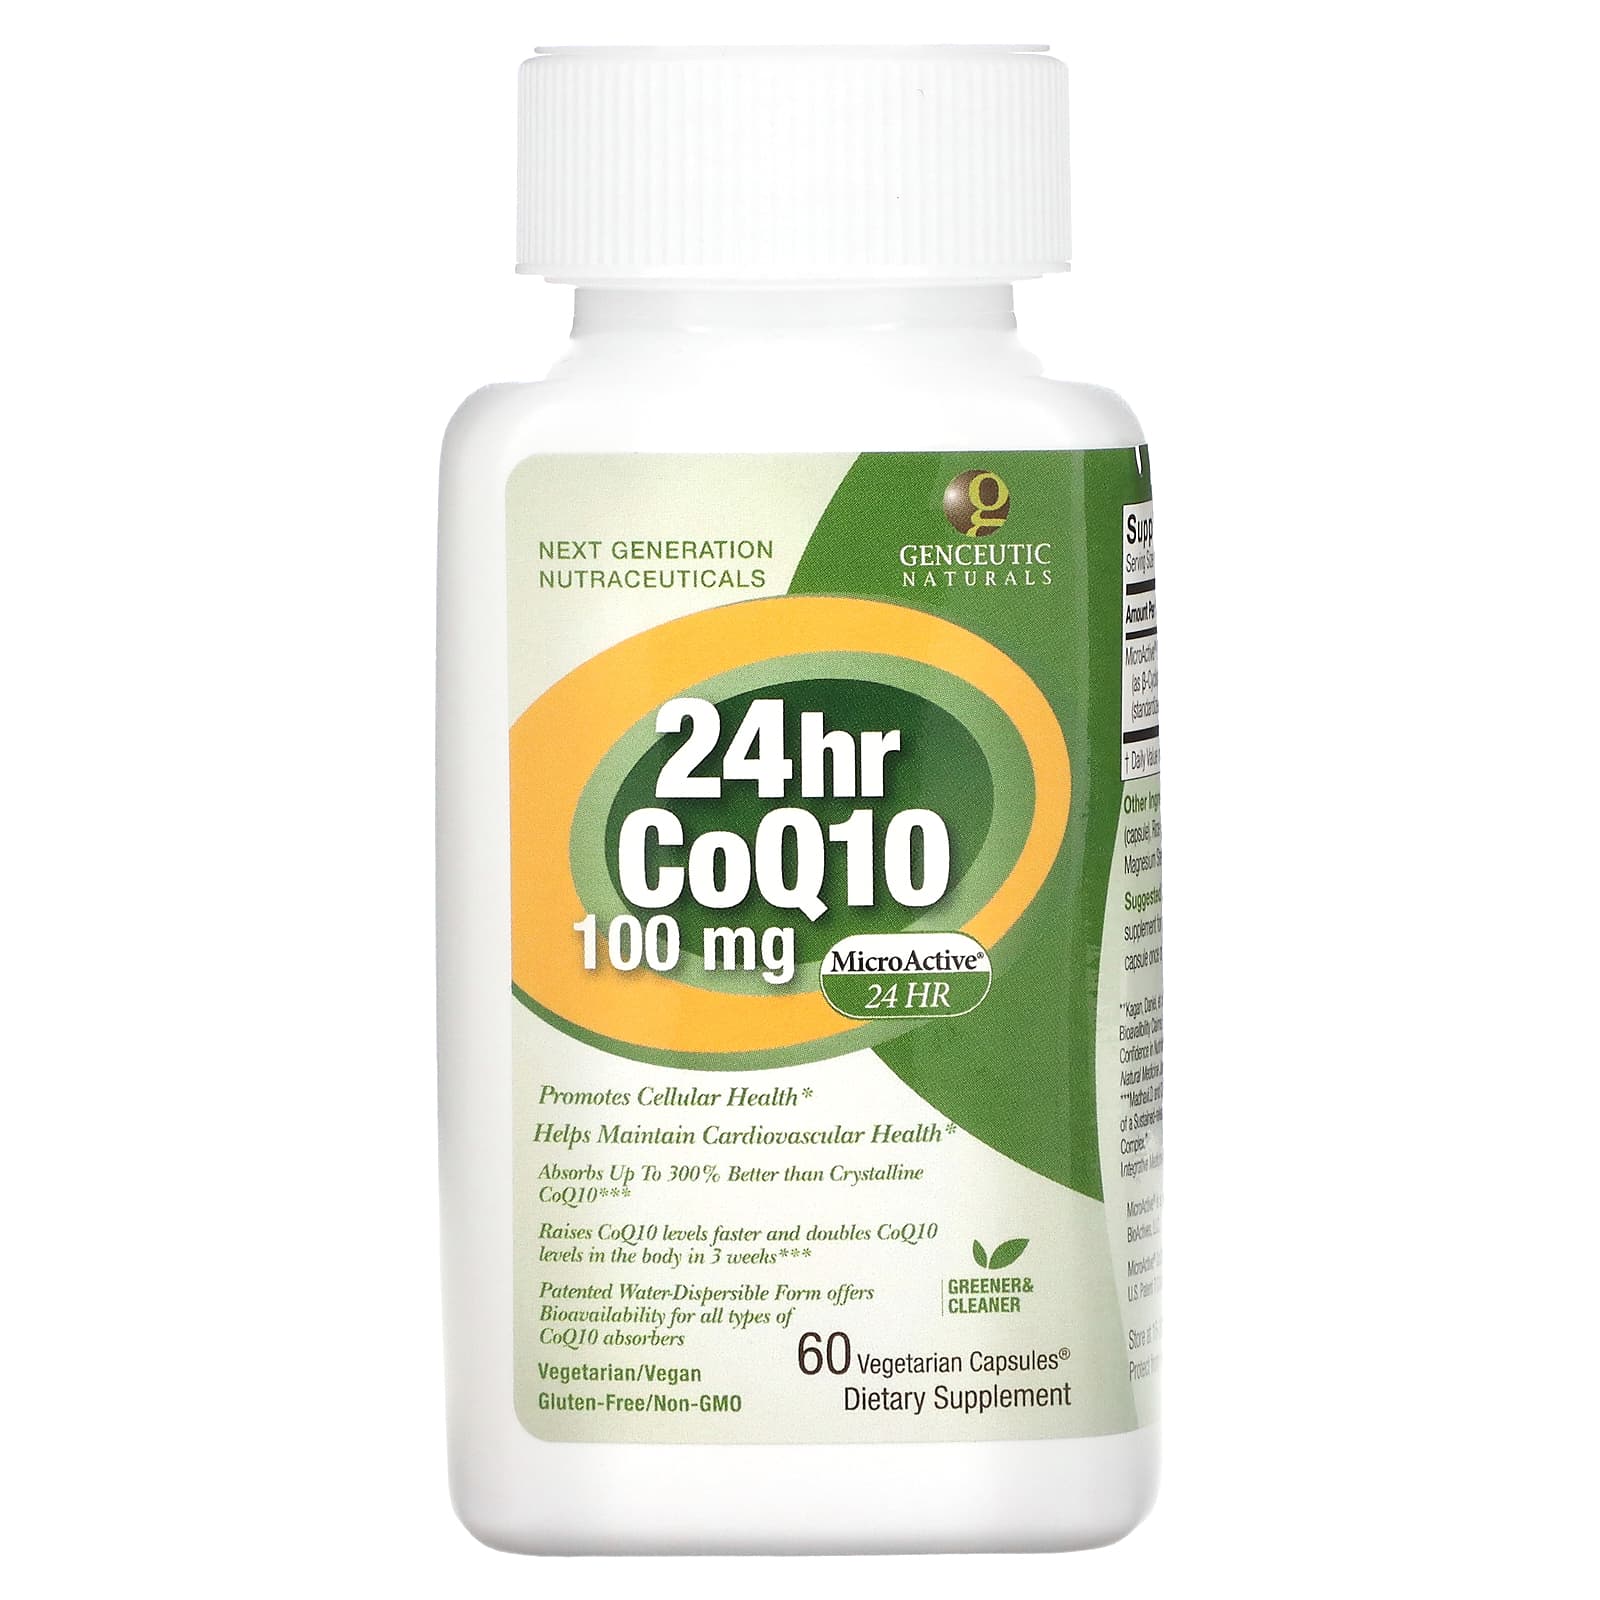 Genceutic Naturals 24hr Coq10 100 Mg 60 Vegetarian Capsules 5591